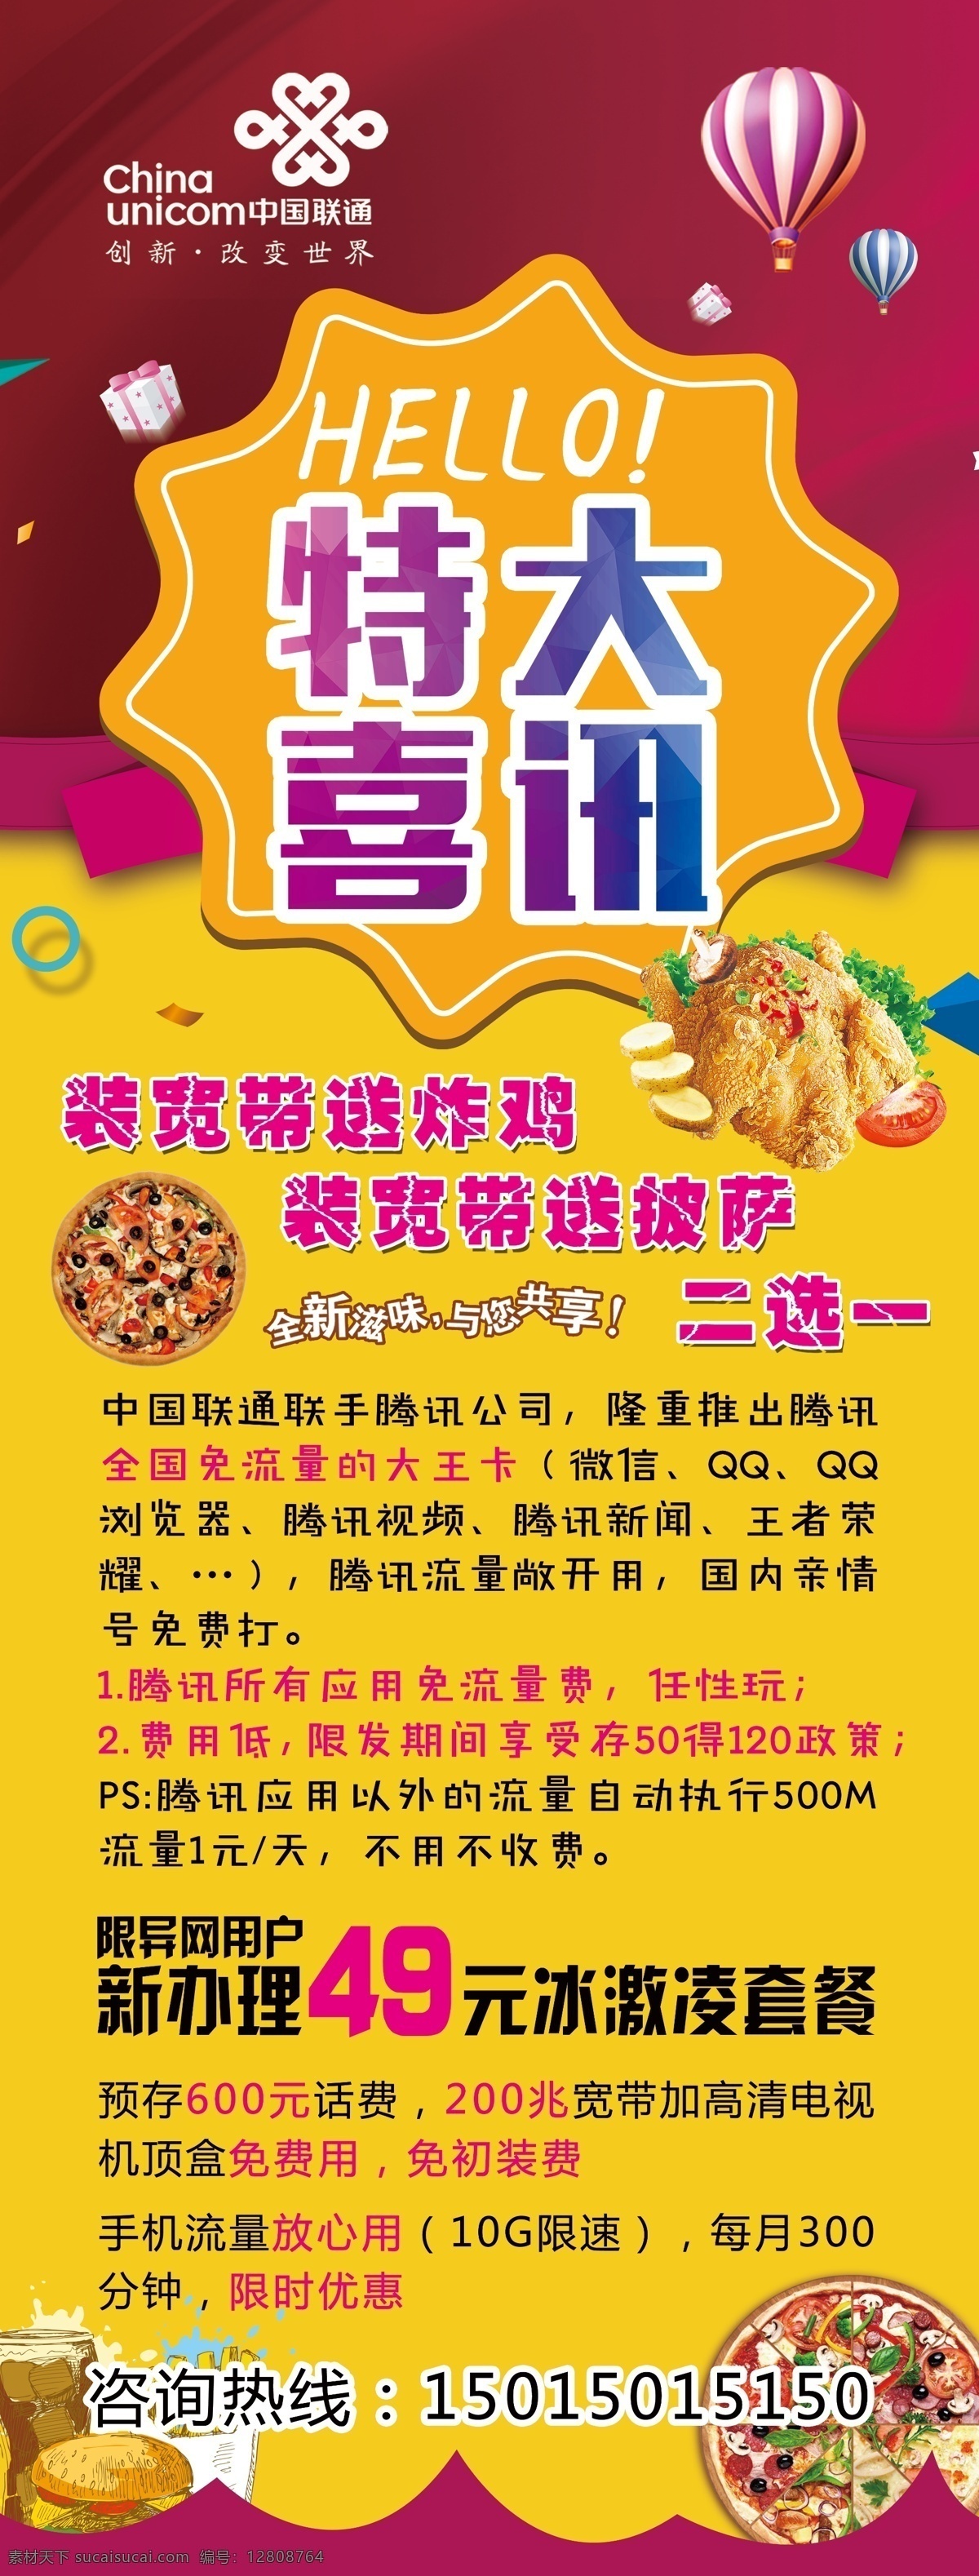 特大喜讯 中国联通 活动展架 活动海报 炸鸡店 汉堡店 49元宽带 宽带套餐 披萨